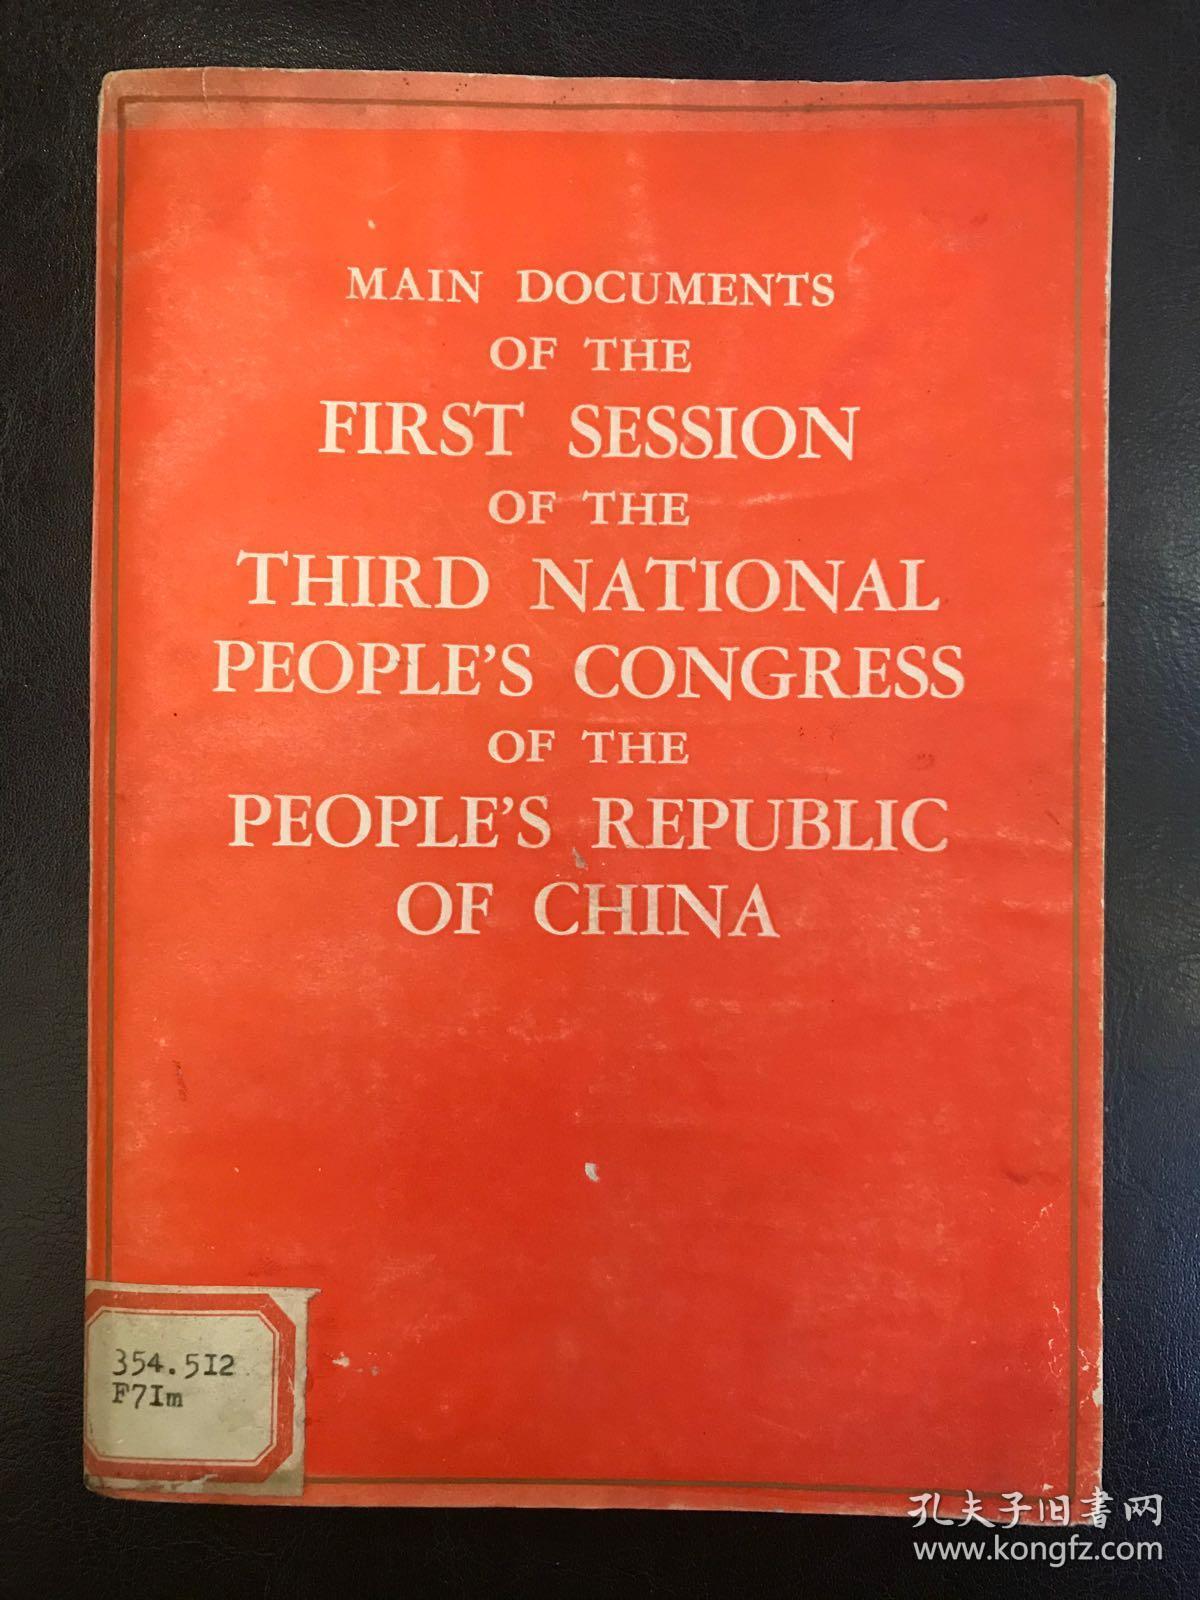 中华人民共和国第三届全国代表大会第一次会议主要文件【英文版】